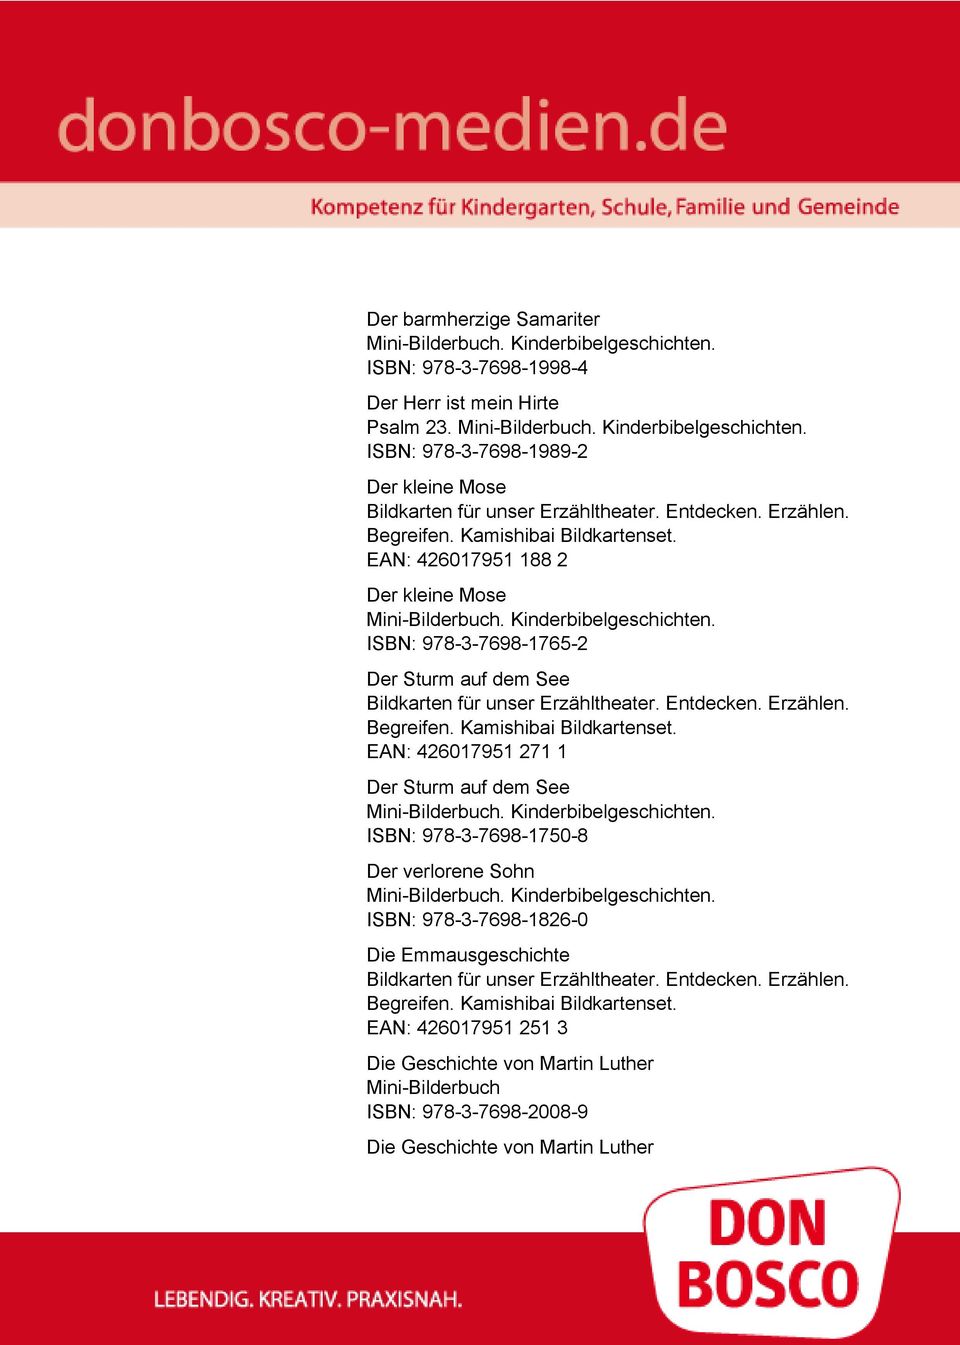 dem See EAN: 426017951 271 1 Der Sturm auf dem See ISBN: 978-3-7698-1750-8 Der verlorene Sohn ISBN: